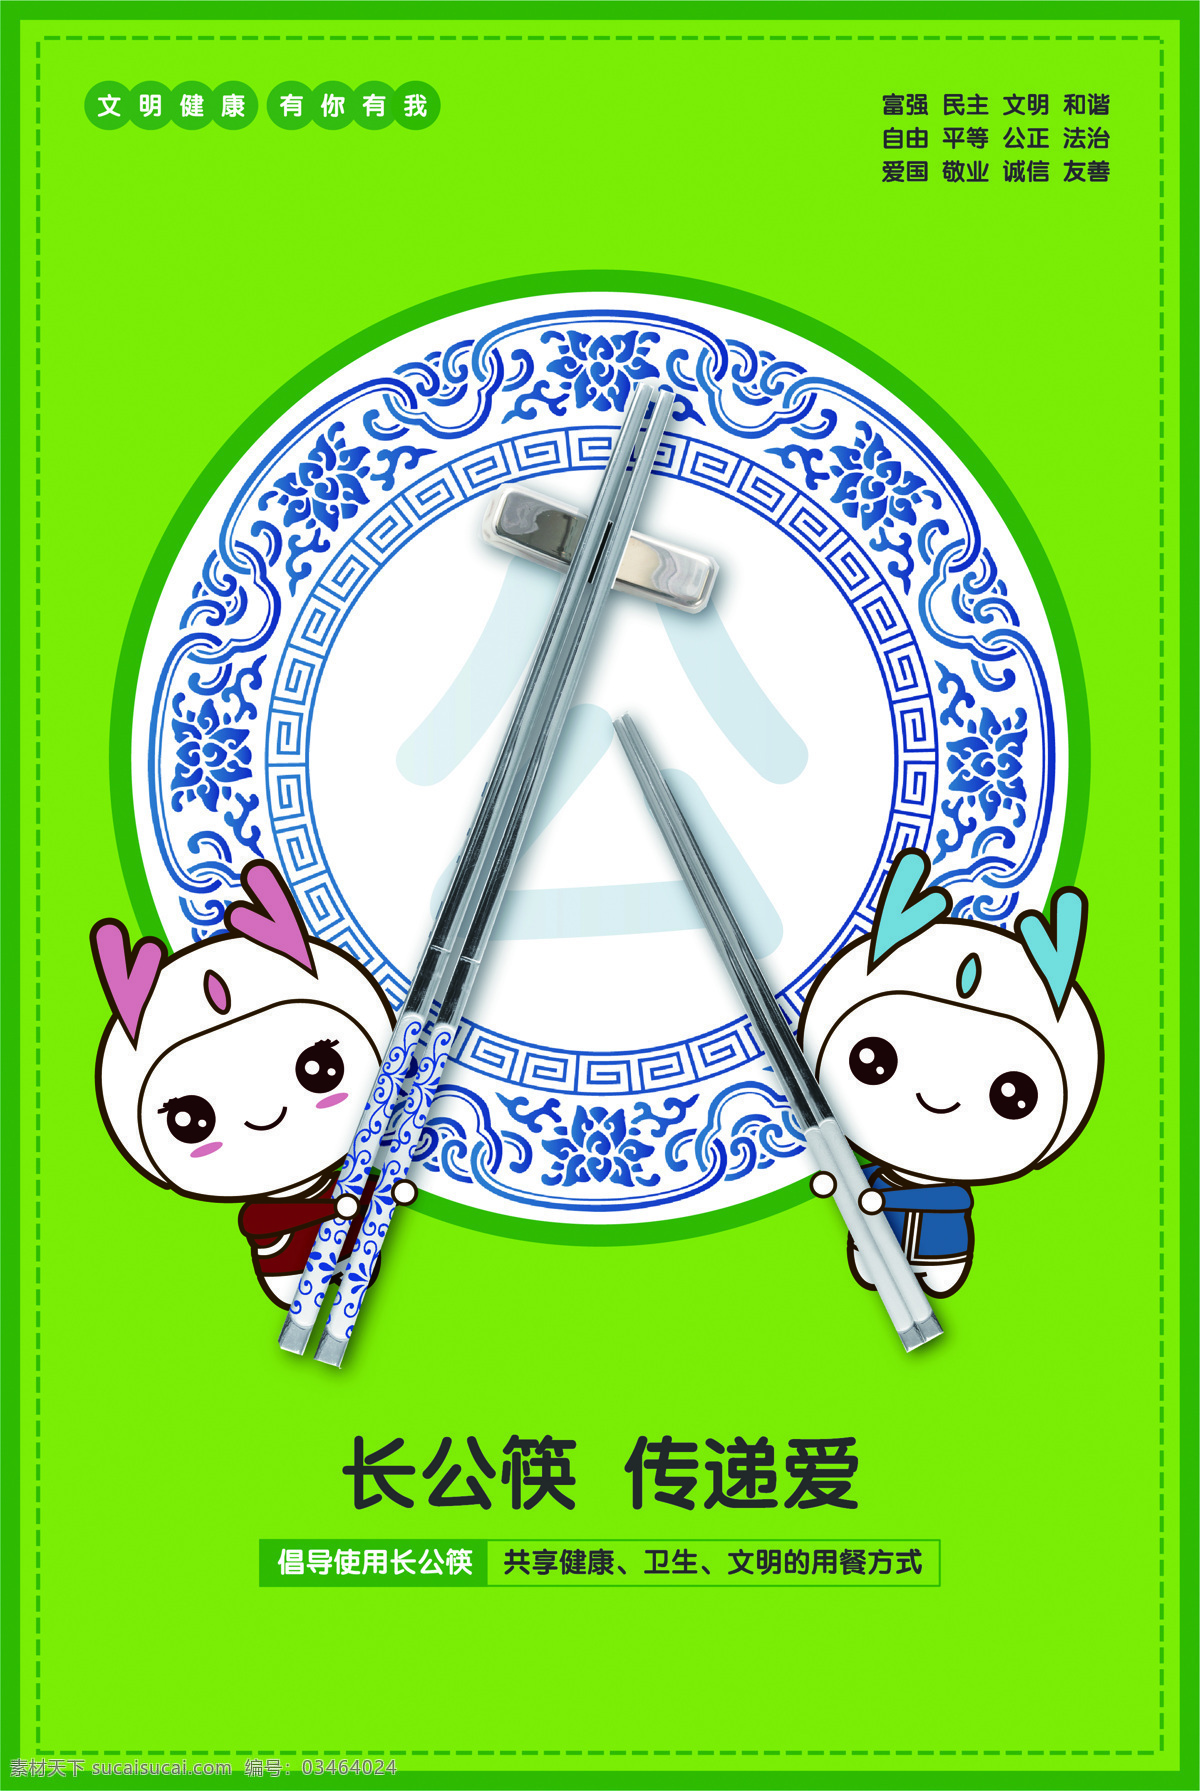 长公筷 传递爱 创建文明城市 文明社区 文明家园 宣传 插画海报